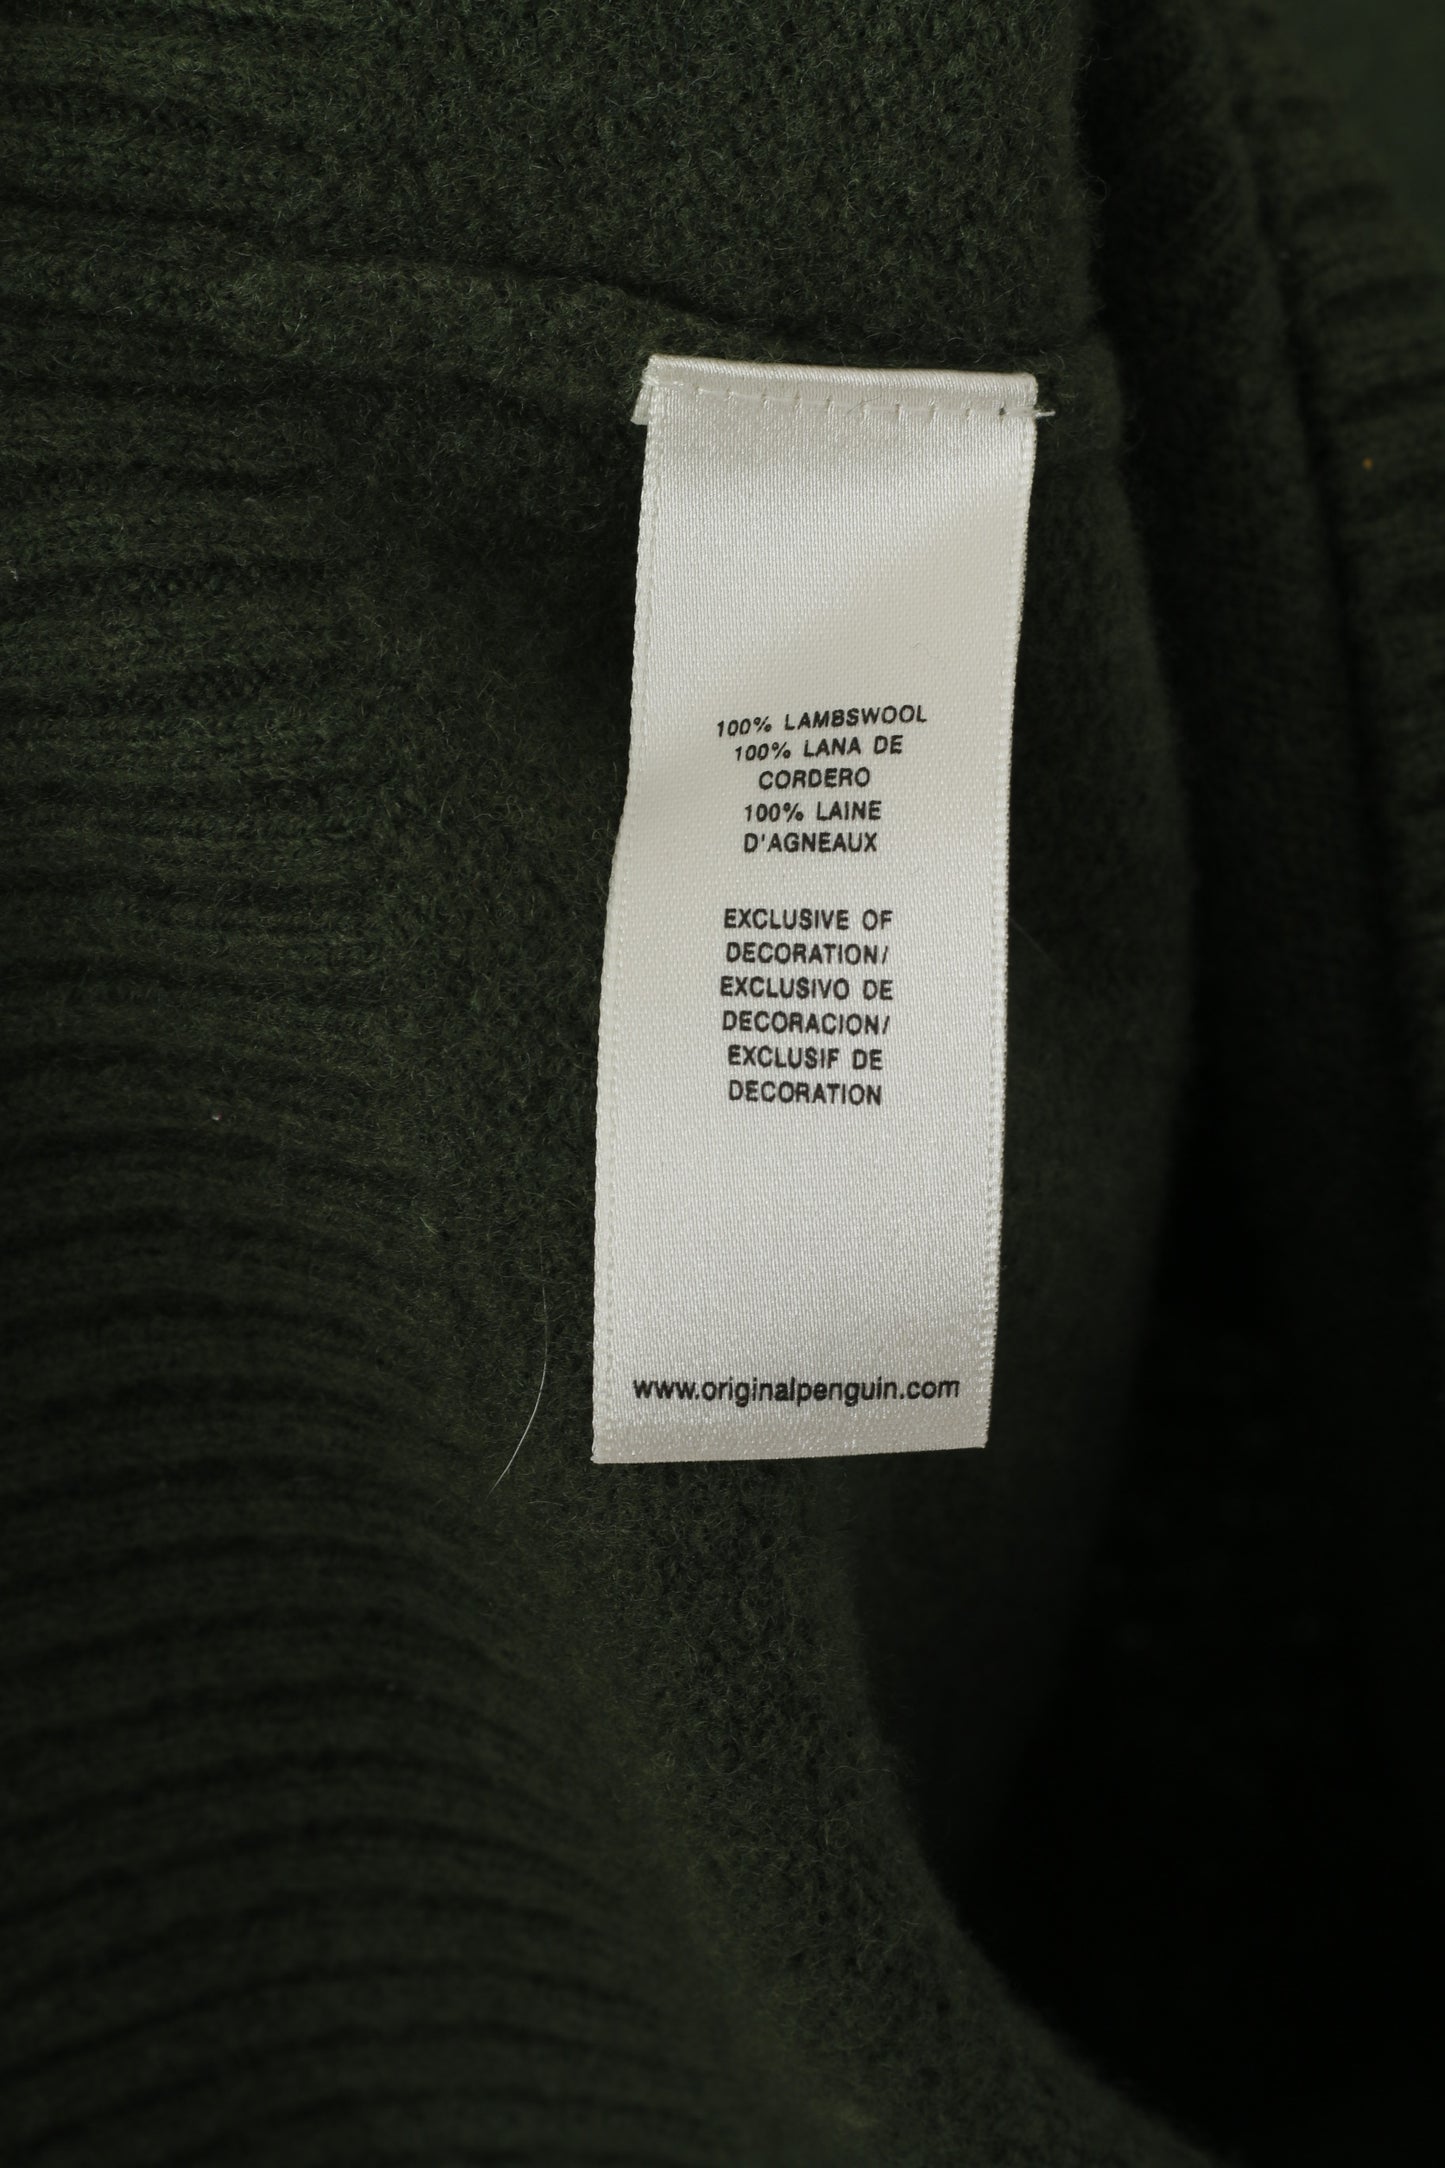 Maglione originale Penguin da uomo 2XL (M) verde con scollo a V, top in lana al 100%.